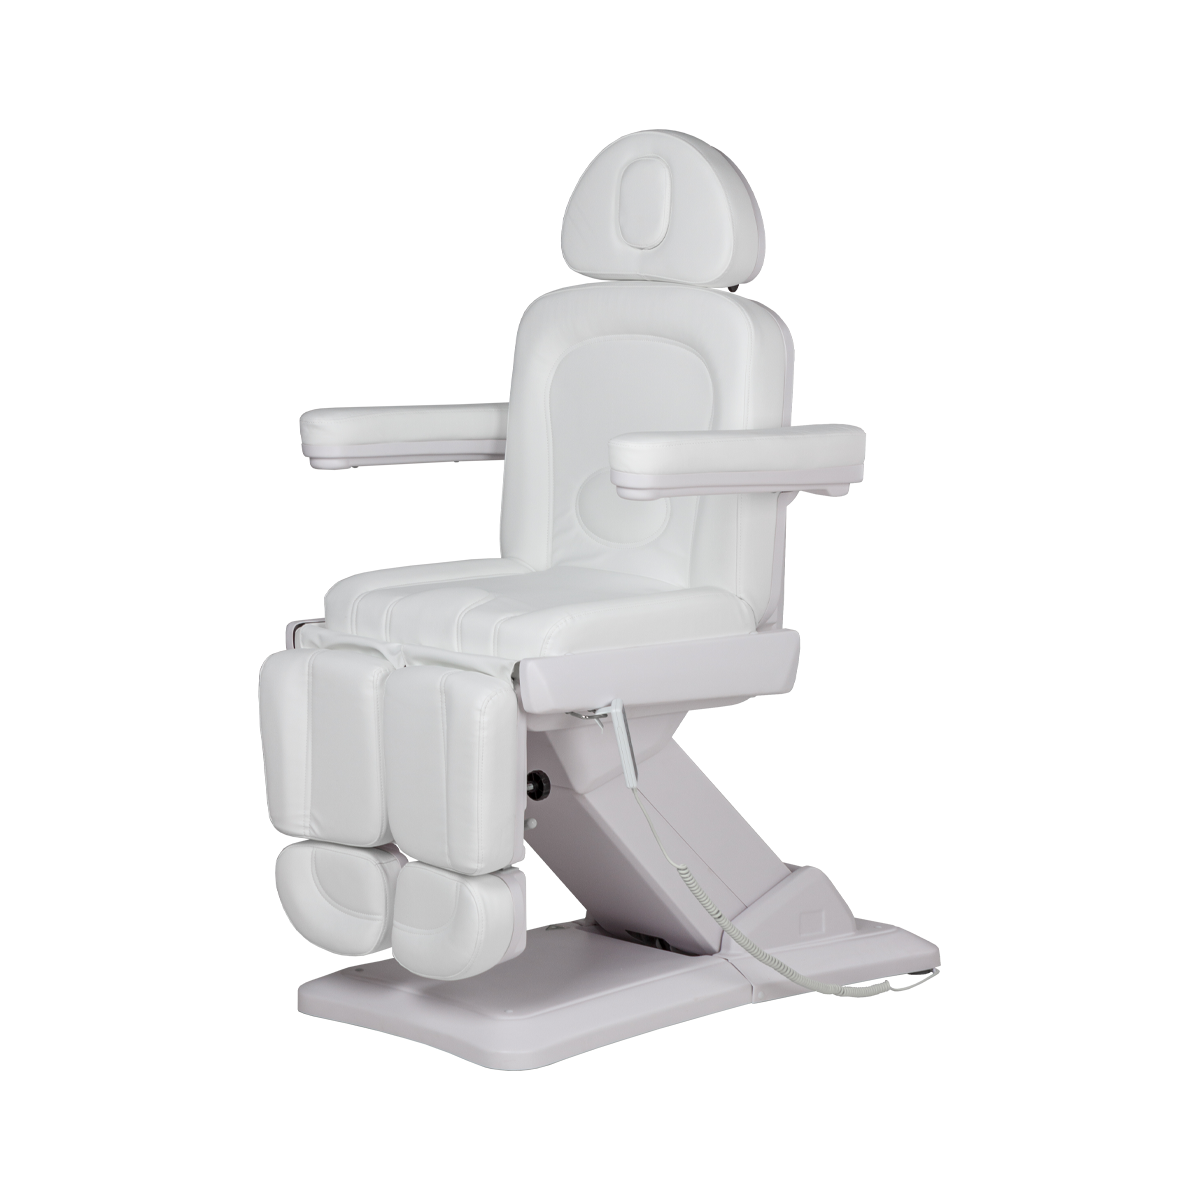 Педикюрное кресло МД-848-3А, 3 мотора - 3 